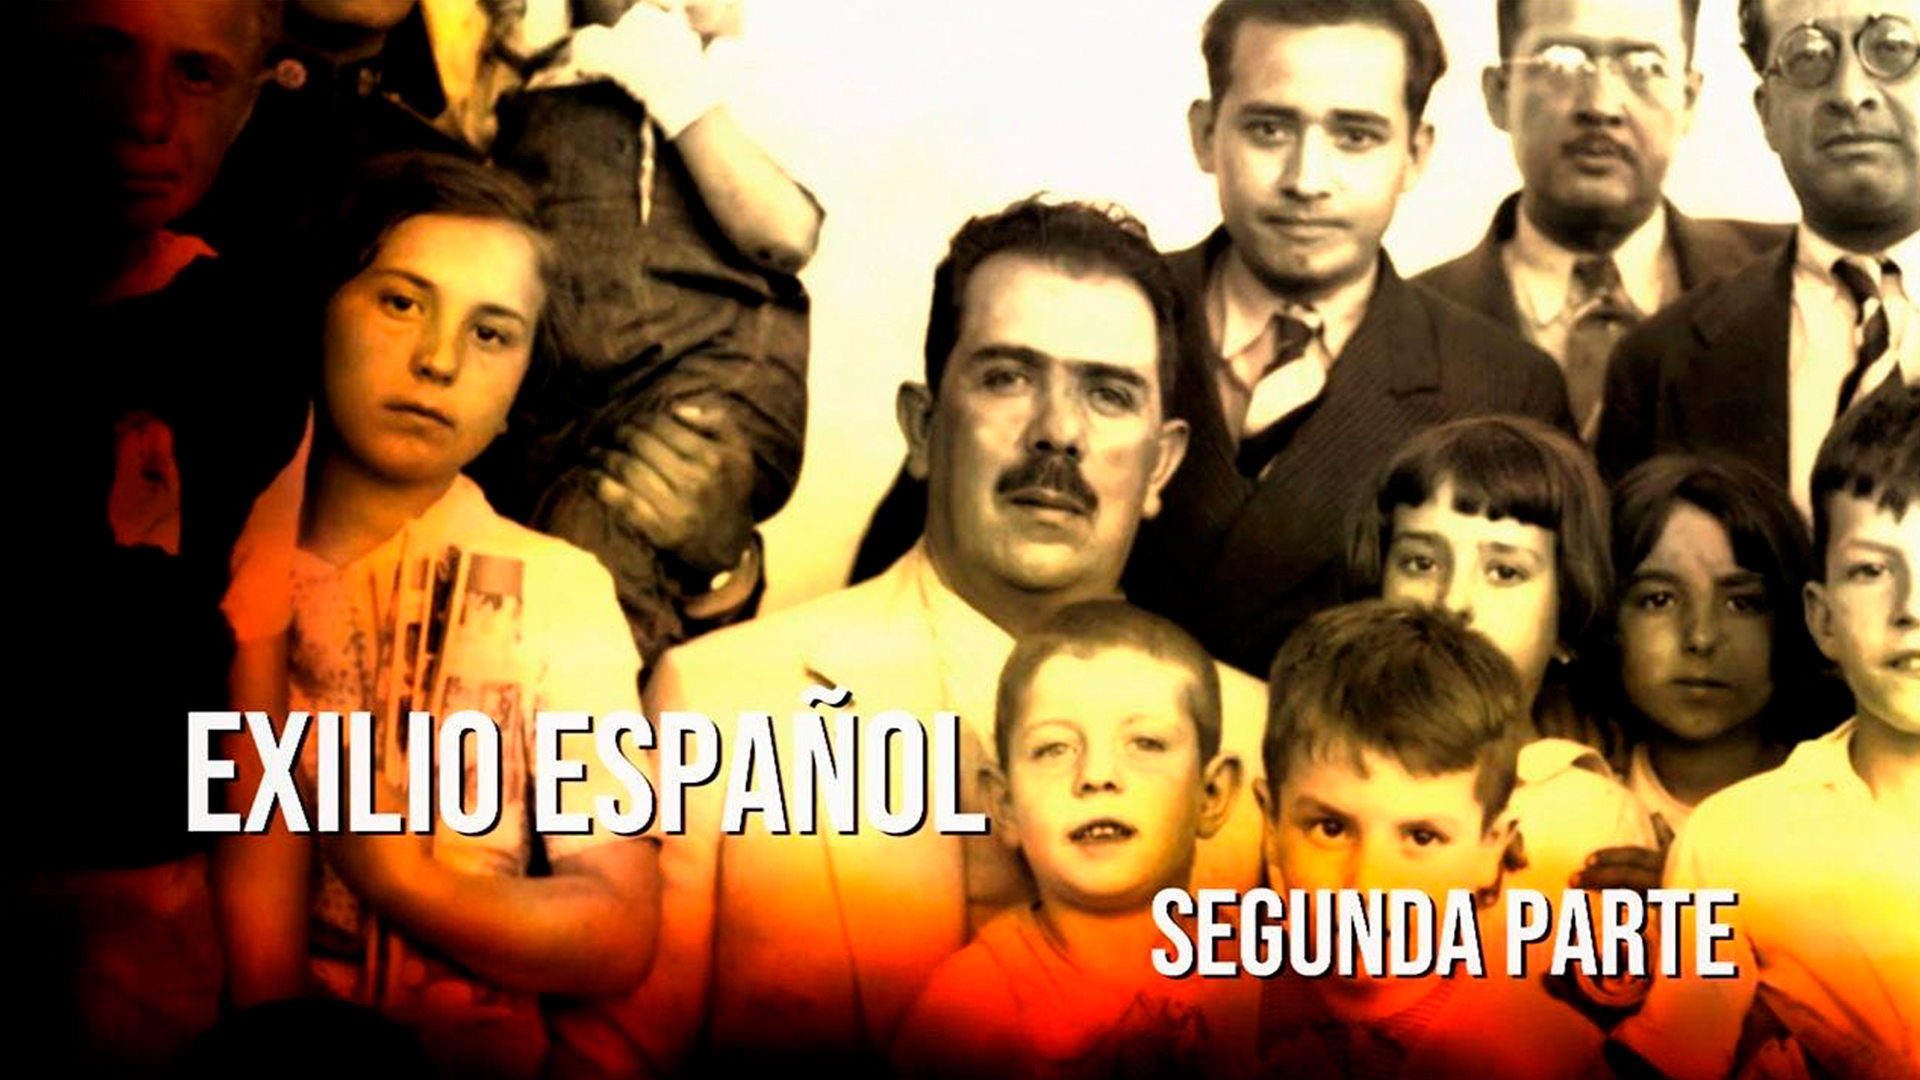 Exilio español. Segunda parte